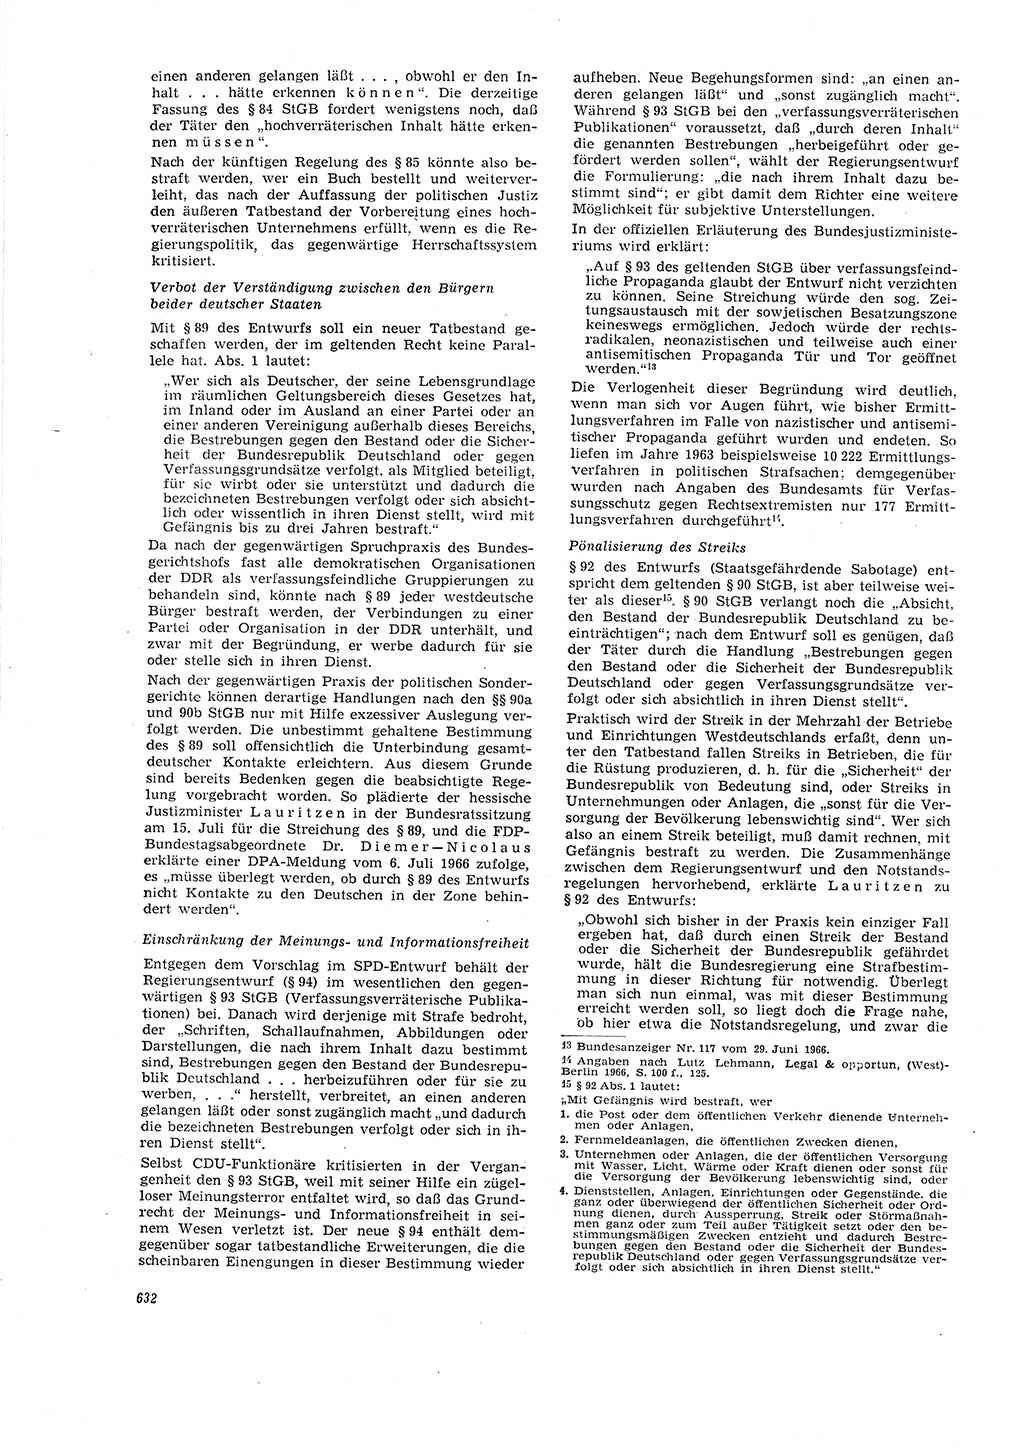 Neue Justiz (NJ), Zeitschrift für Recht und Rechtswissenschaft [Deutsche Demokratische Republik (DDR)], 20. Jahrgang 1966, Seite 632 (NJ DDR 1966, S. 632)